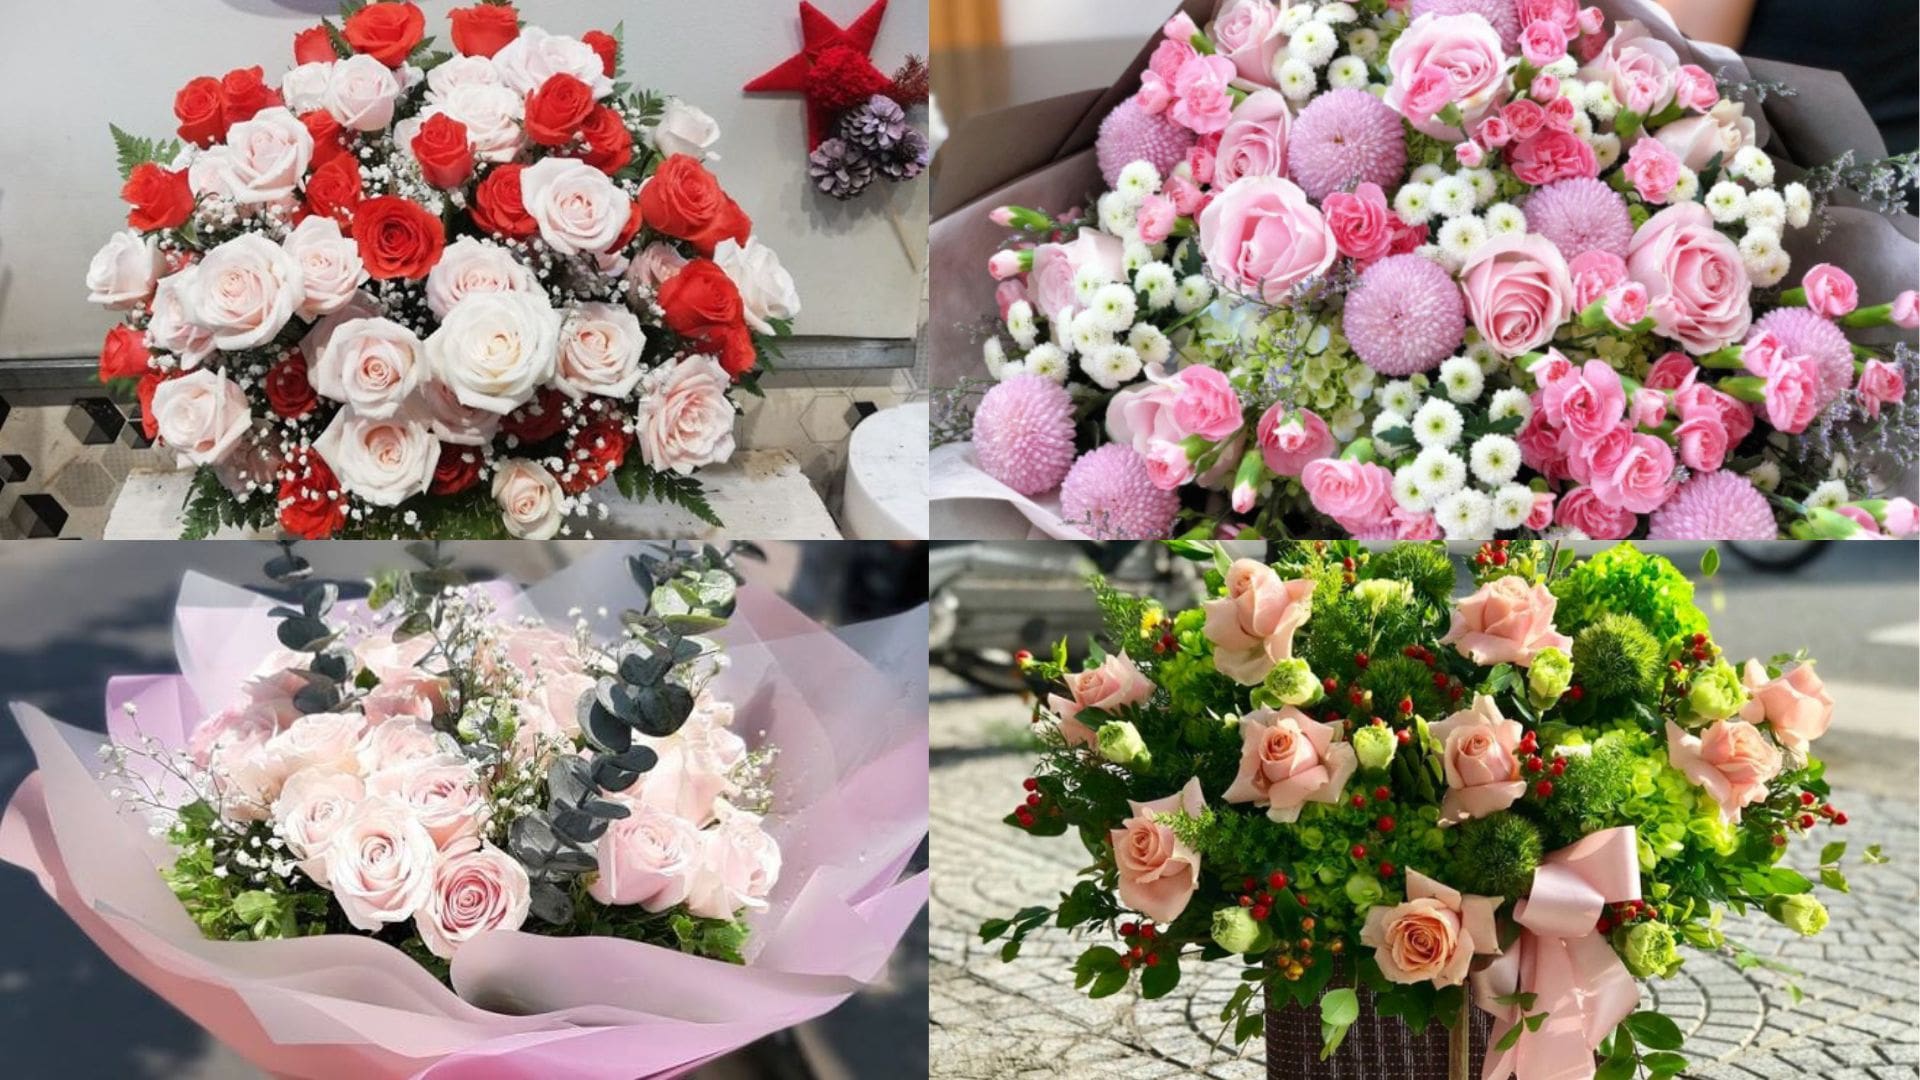 Tuyền Phan Flowers - Shop hoa tươi Đà Nẵng nổi tiếng 